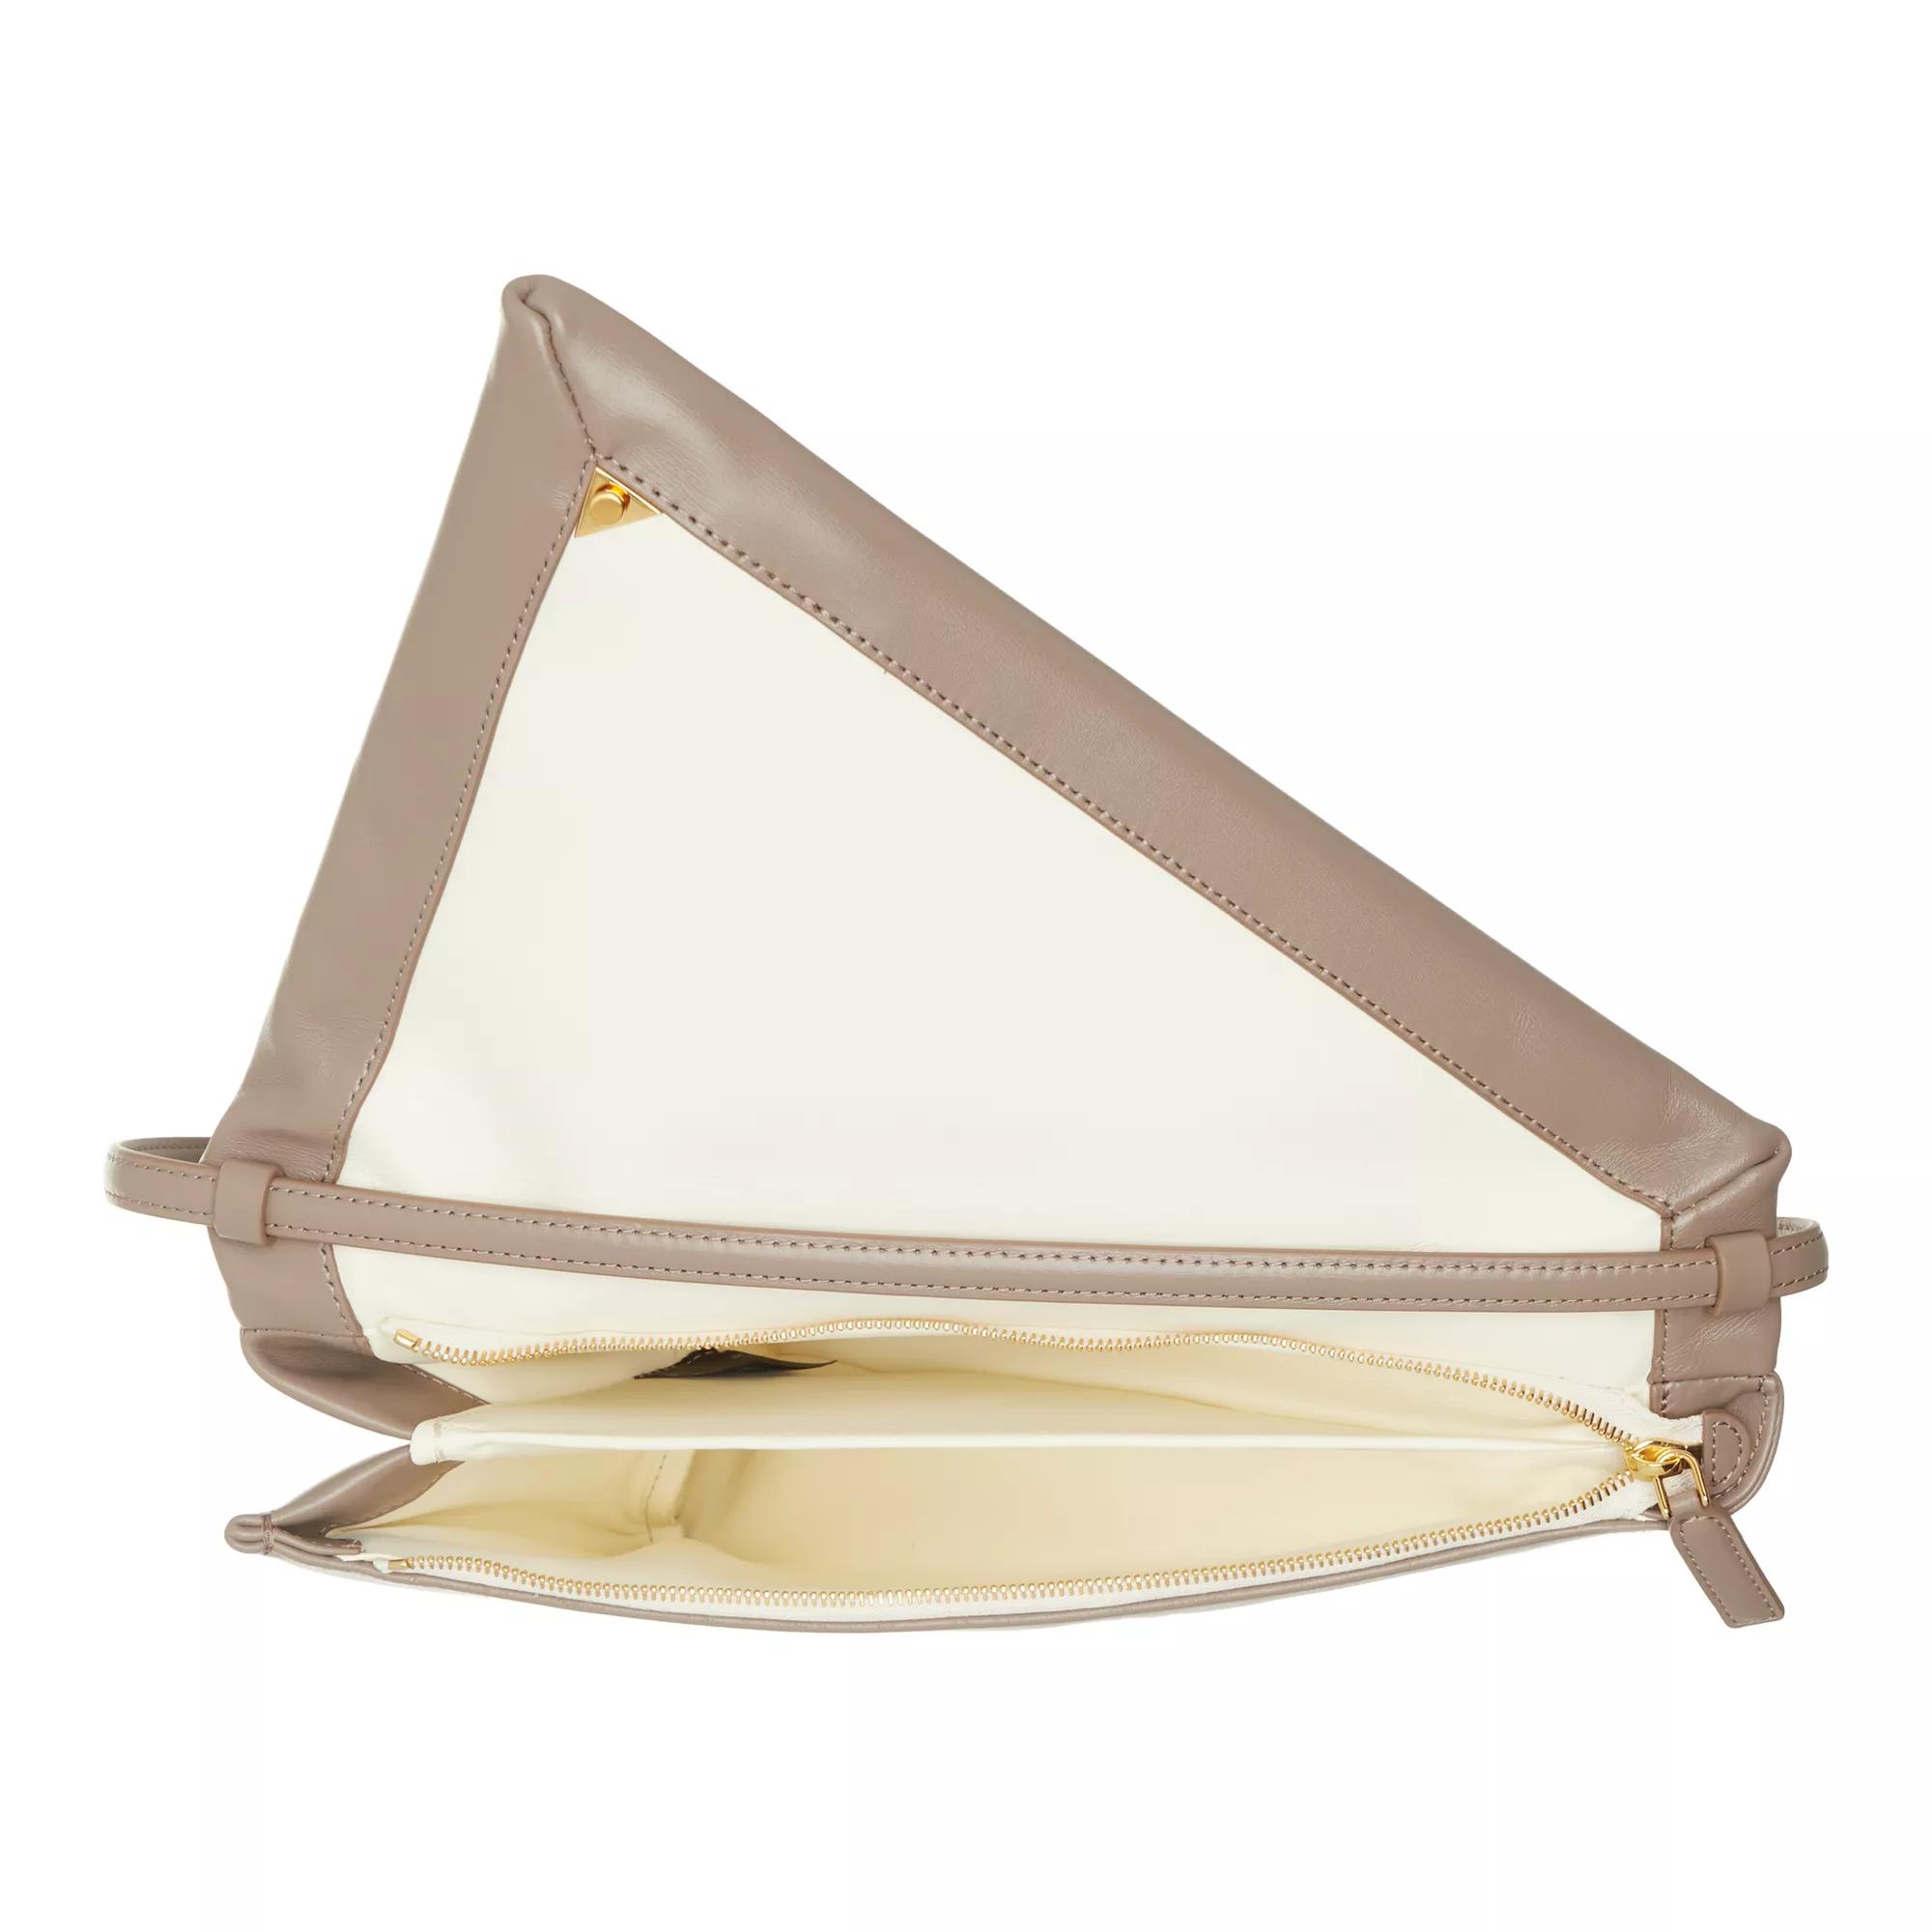 Marni Pochettes Prisma Triangle Bag in taupe